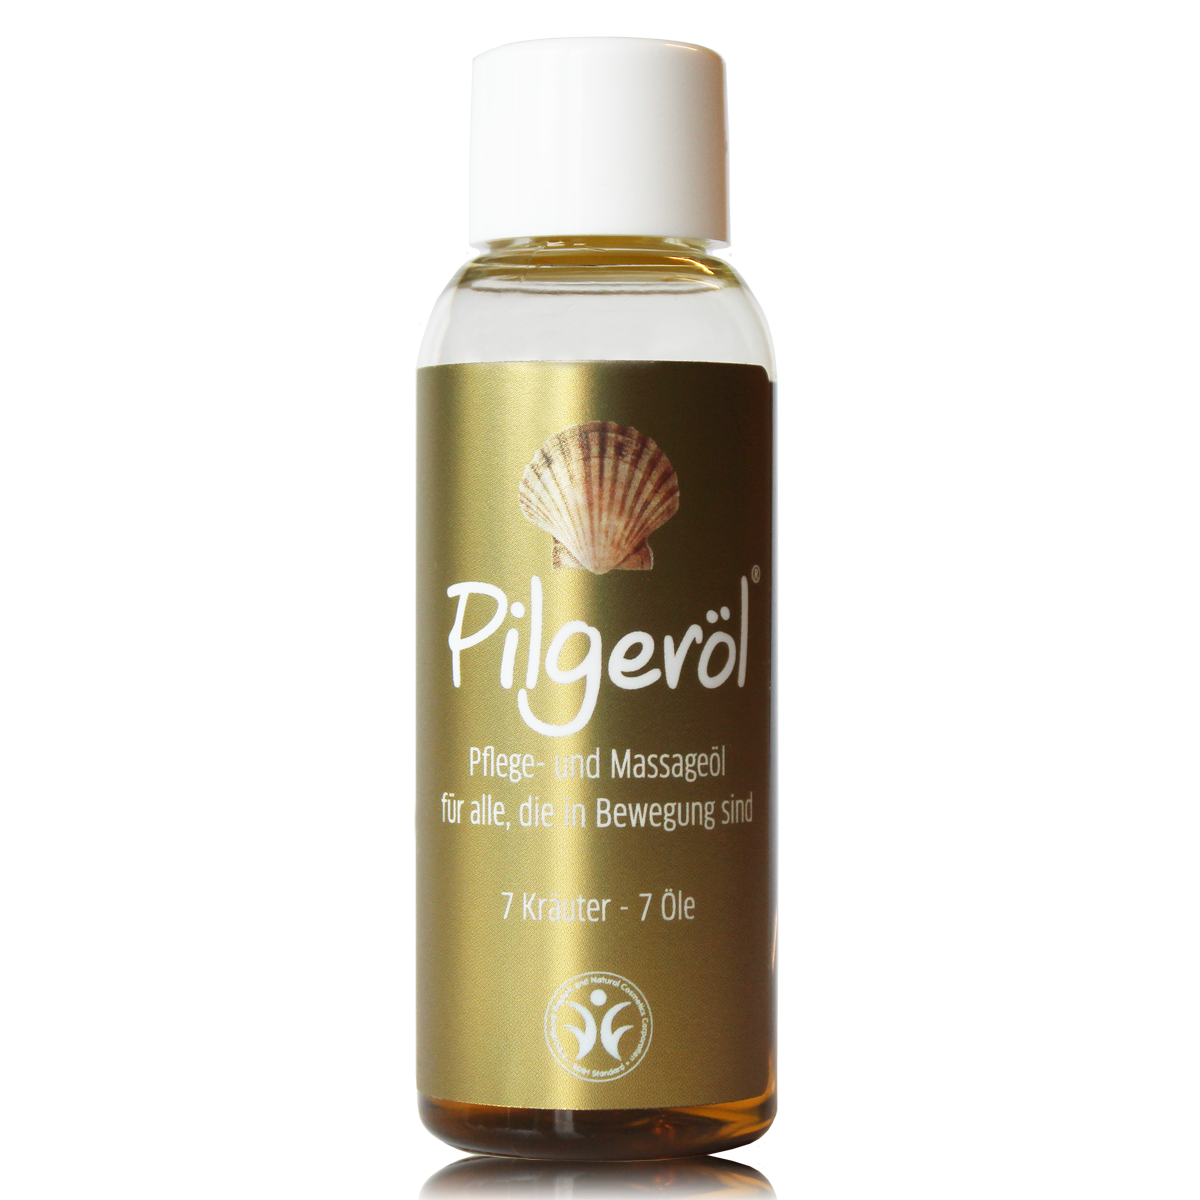 Pilgrim oil